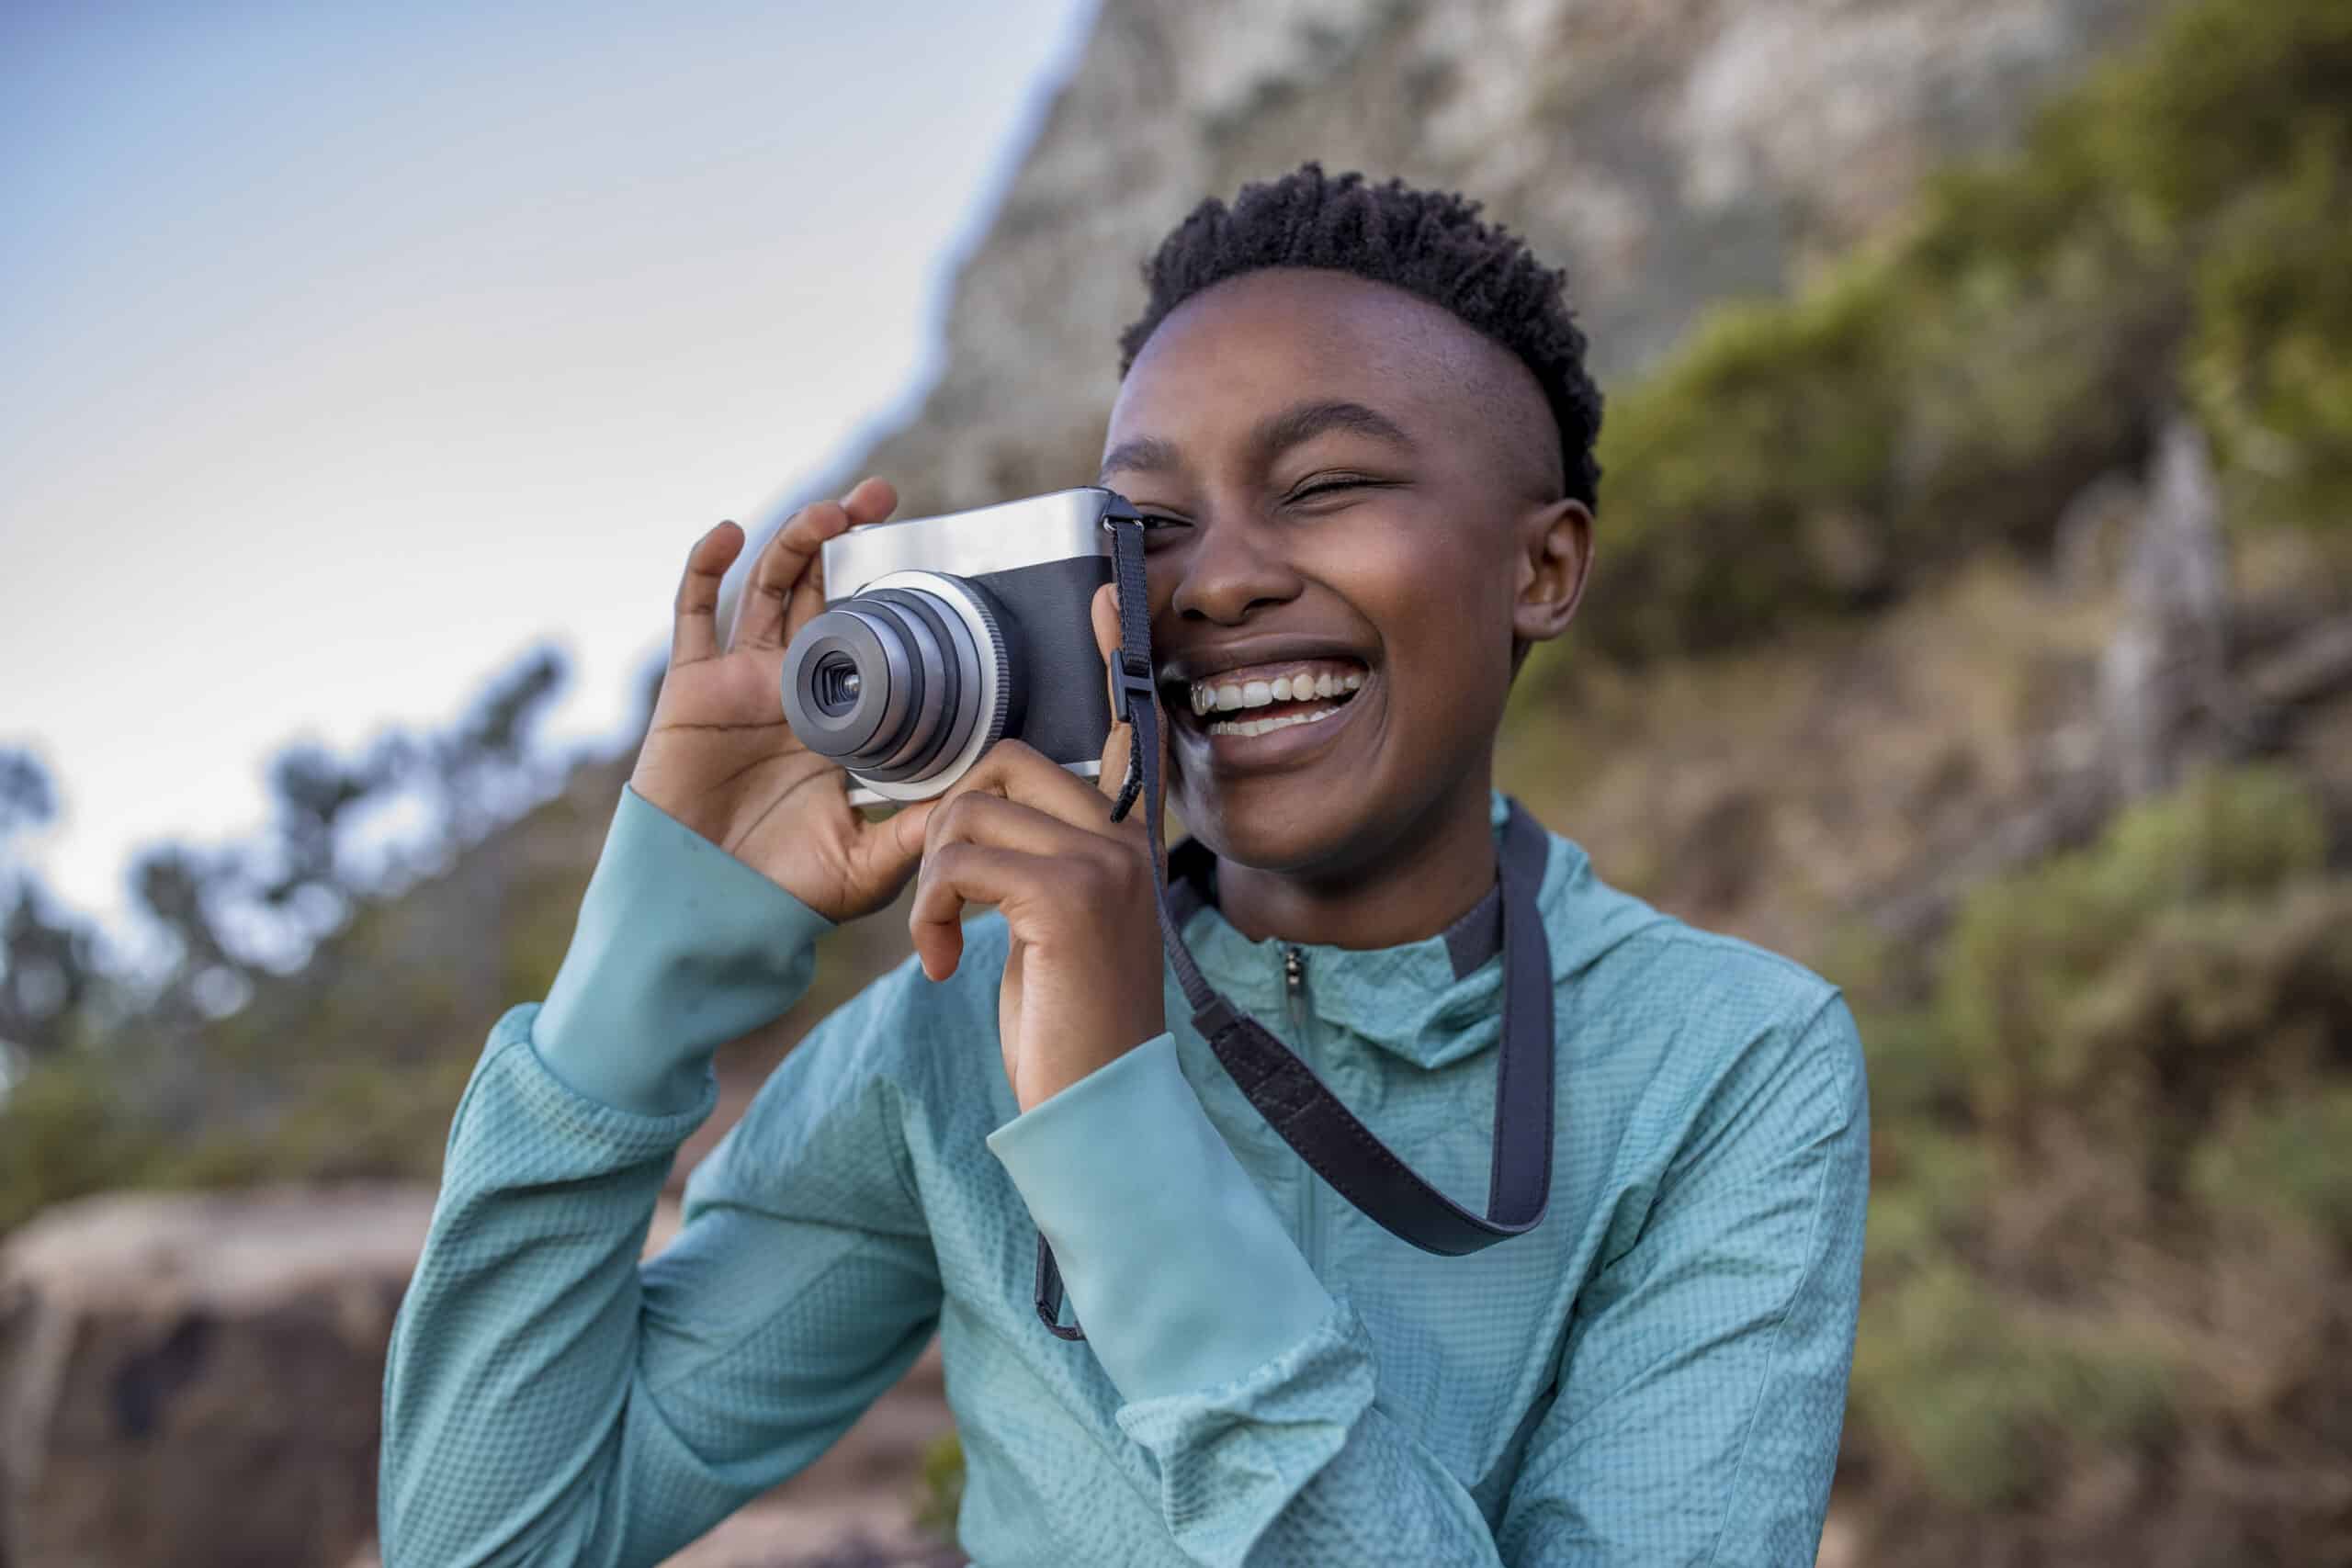 Eine fröhliche junge Frau macht mit einer Digitalkamera im Freien Fotos und lacht, während sie von der Naturlandschaft umgeben ist. © Fotografie Tomas Rodriguez